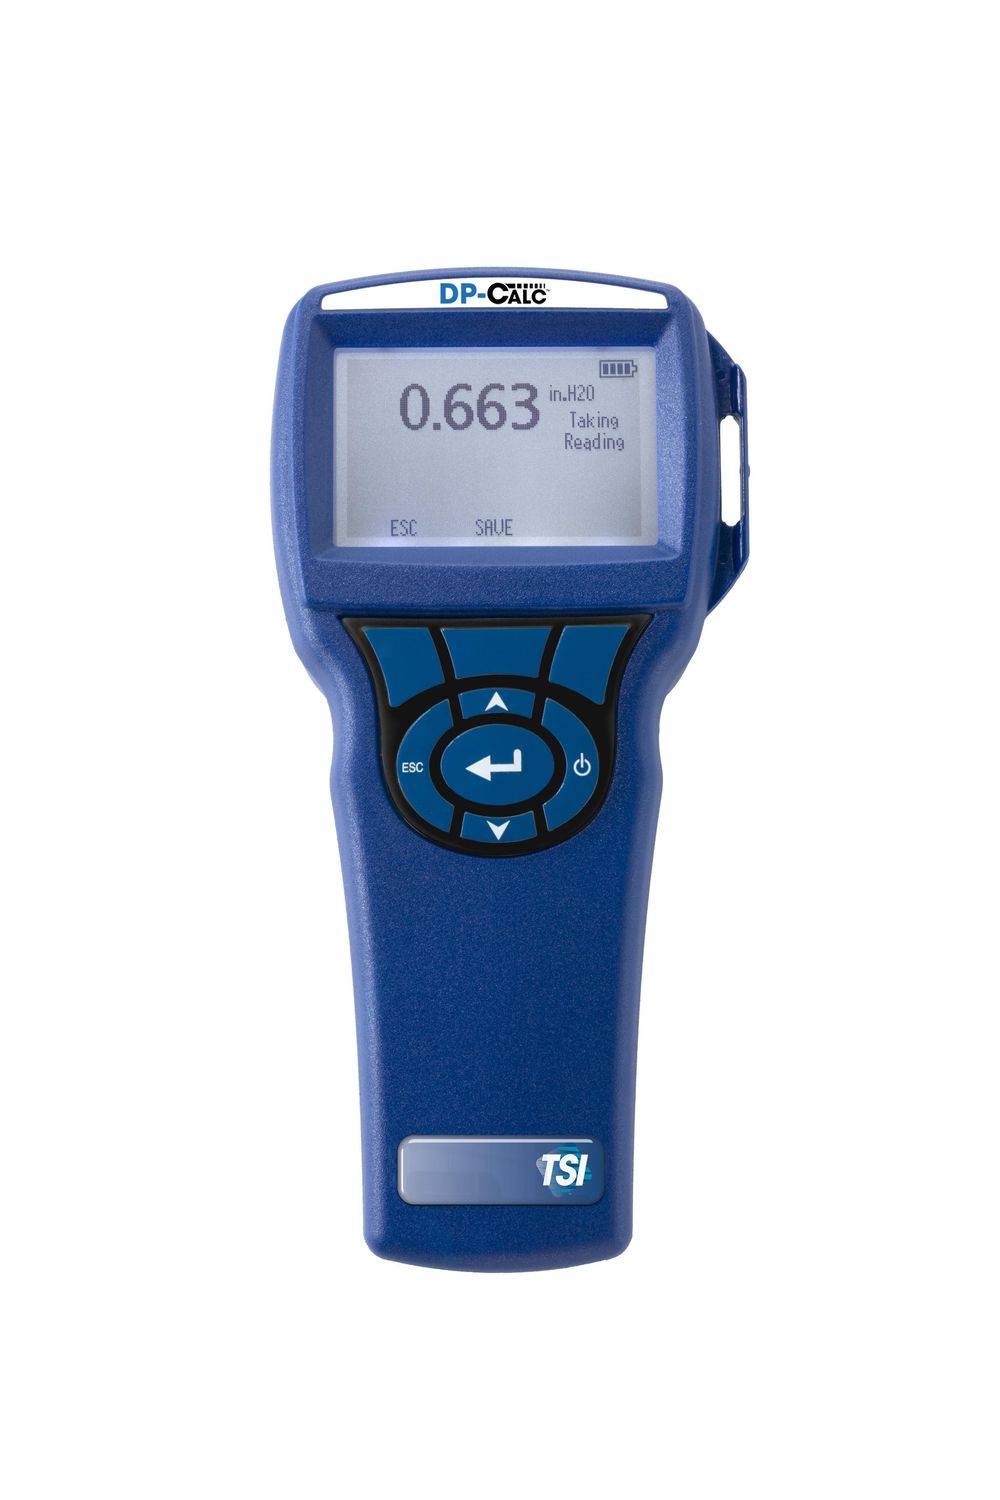 DP-Calc Micro manometers for Takes HVAC pressure measurements